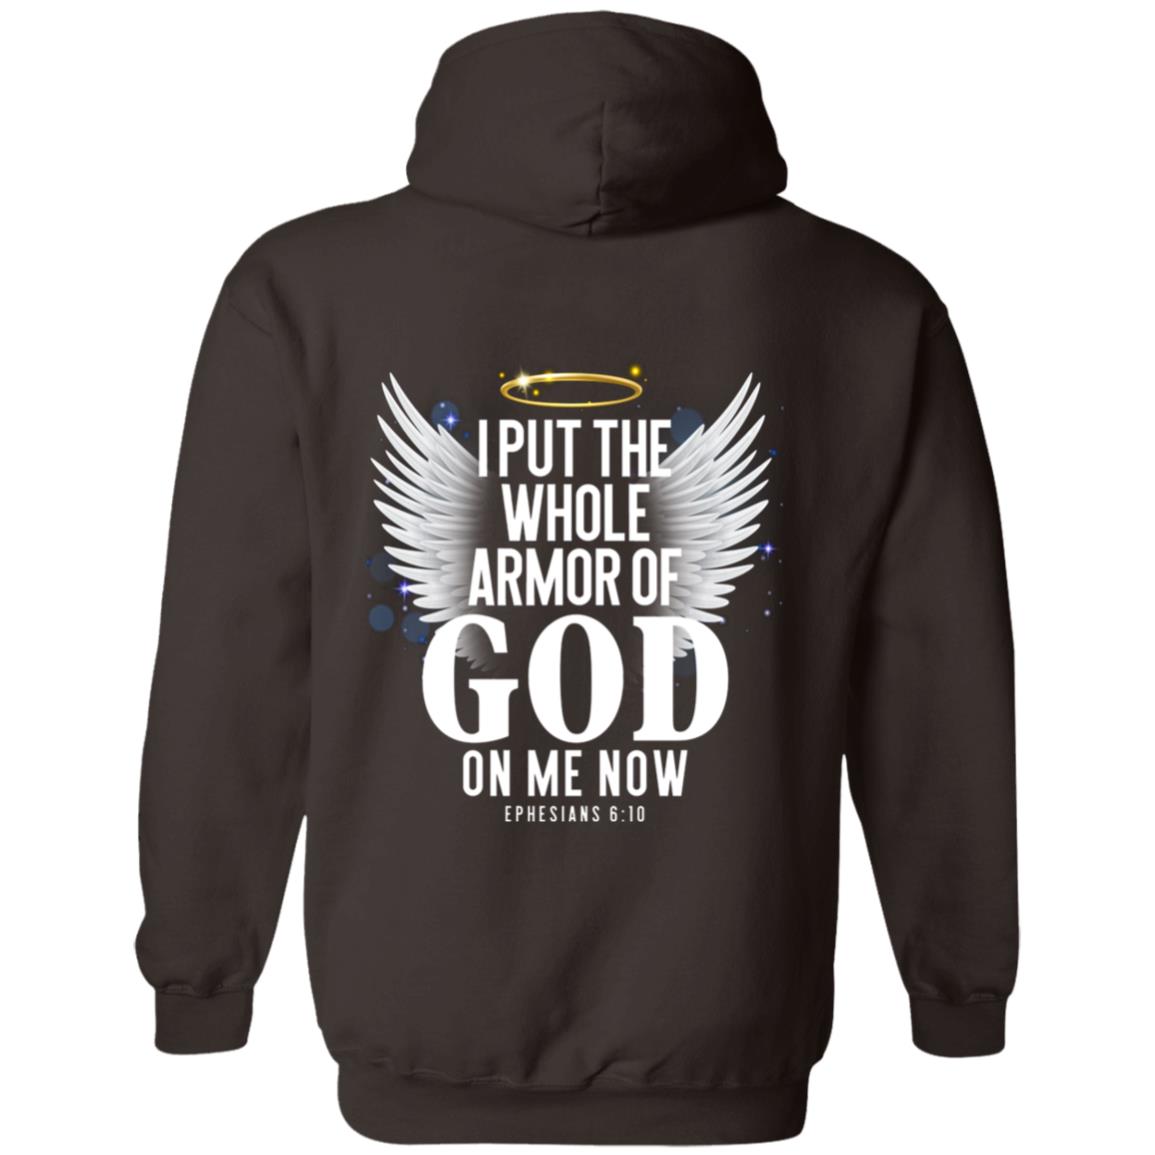 Armor of God Sweatshirt